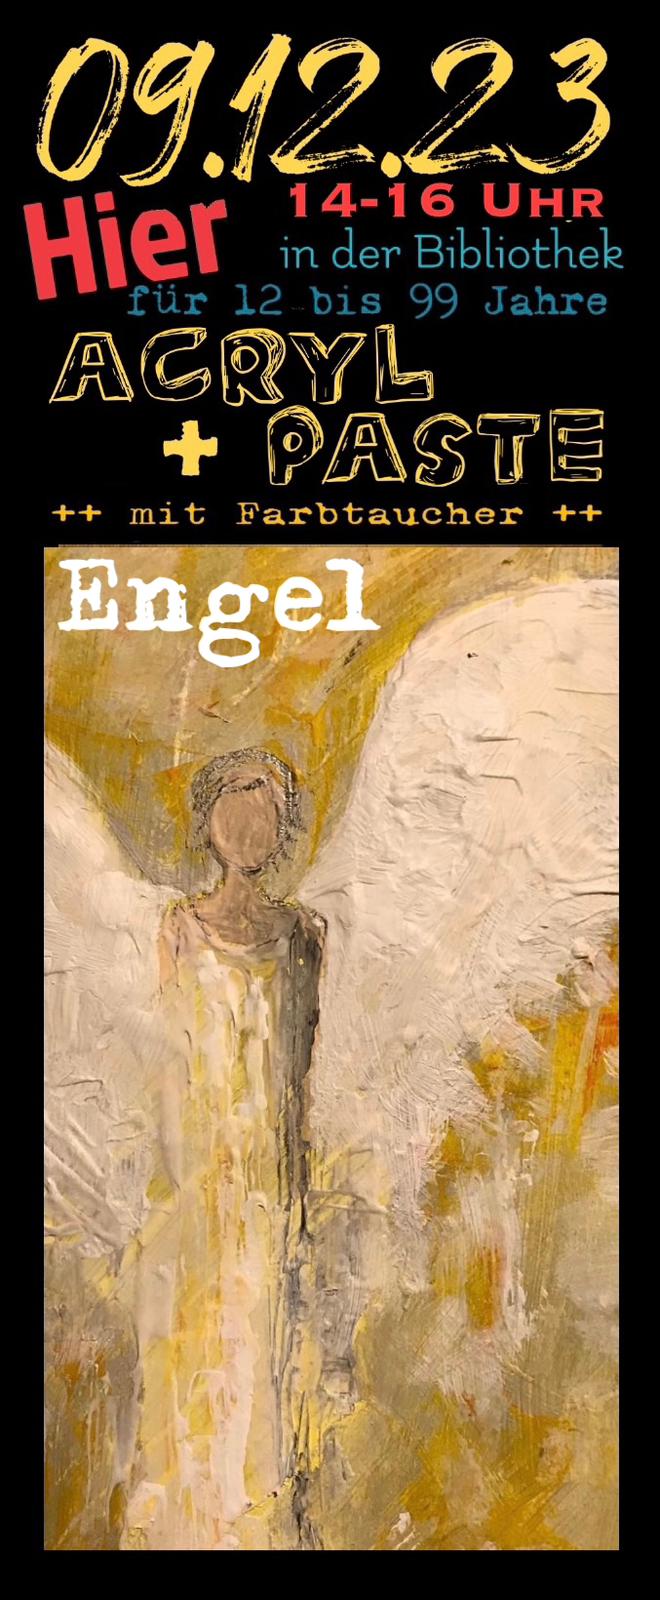 Engel malen mit Acryl und Paste in der Gemeindebibliothek